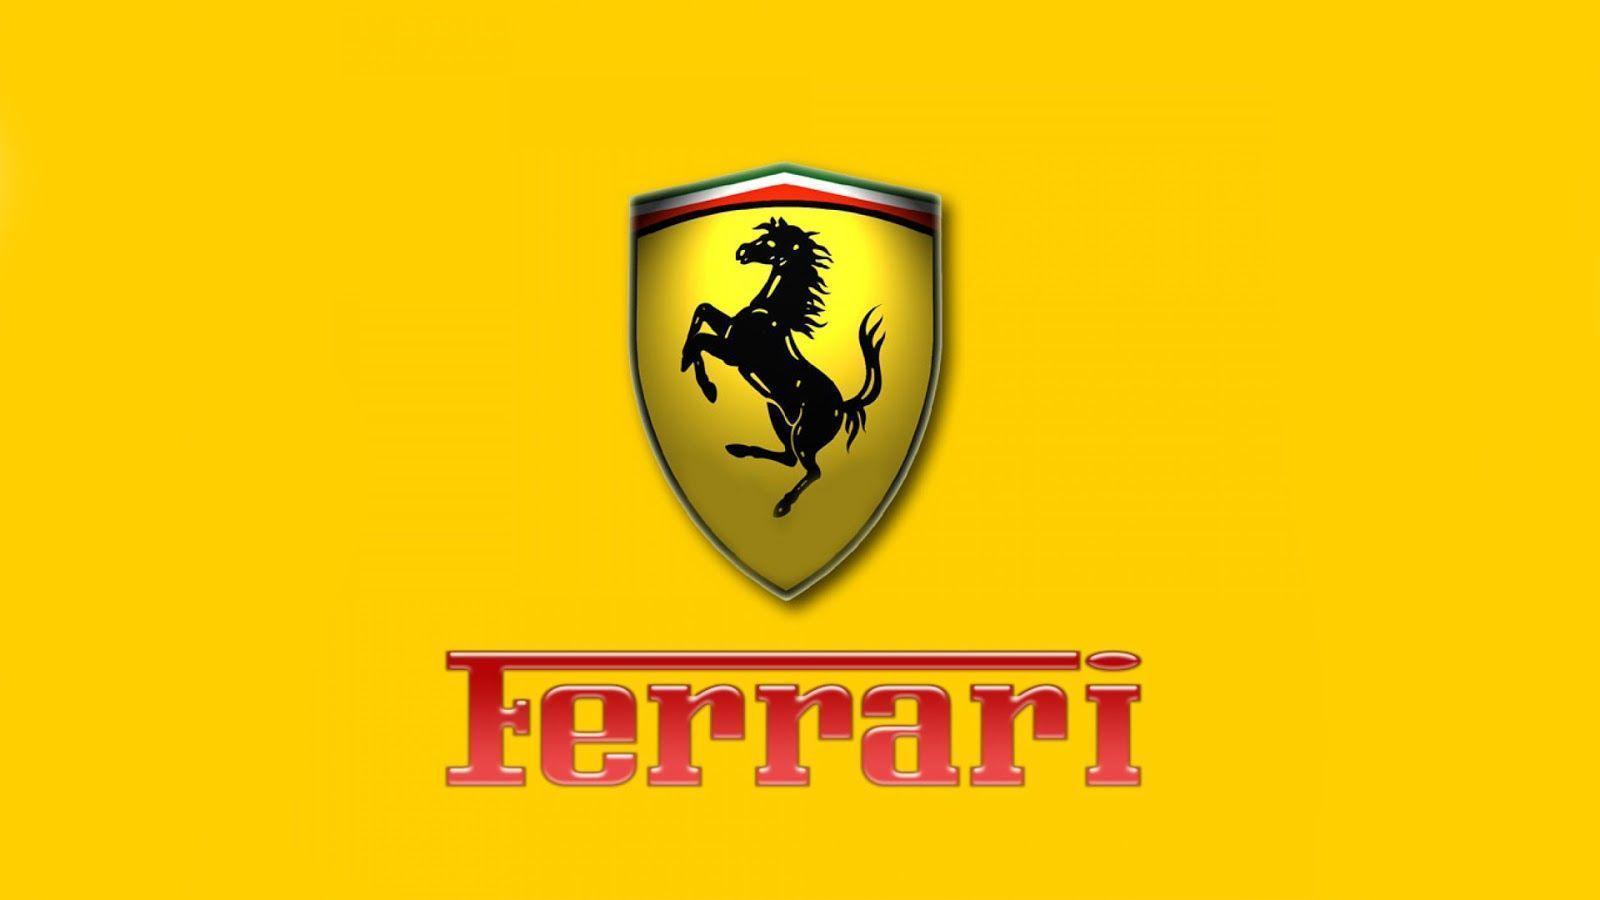 Ferrari Logo Wallpapers For Mobile Wallpaper Cave